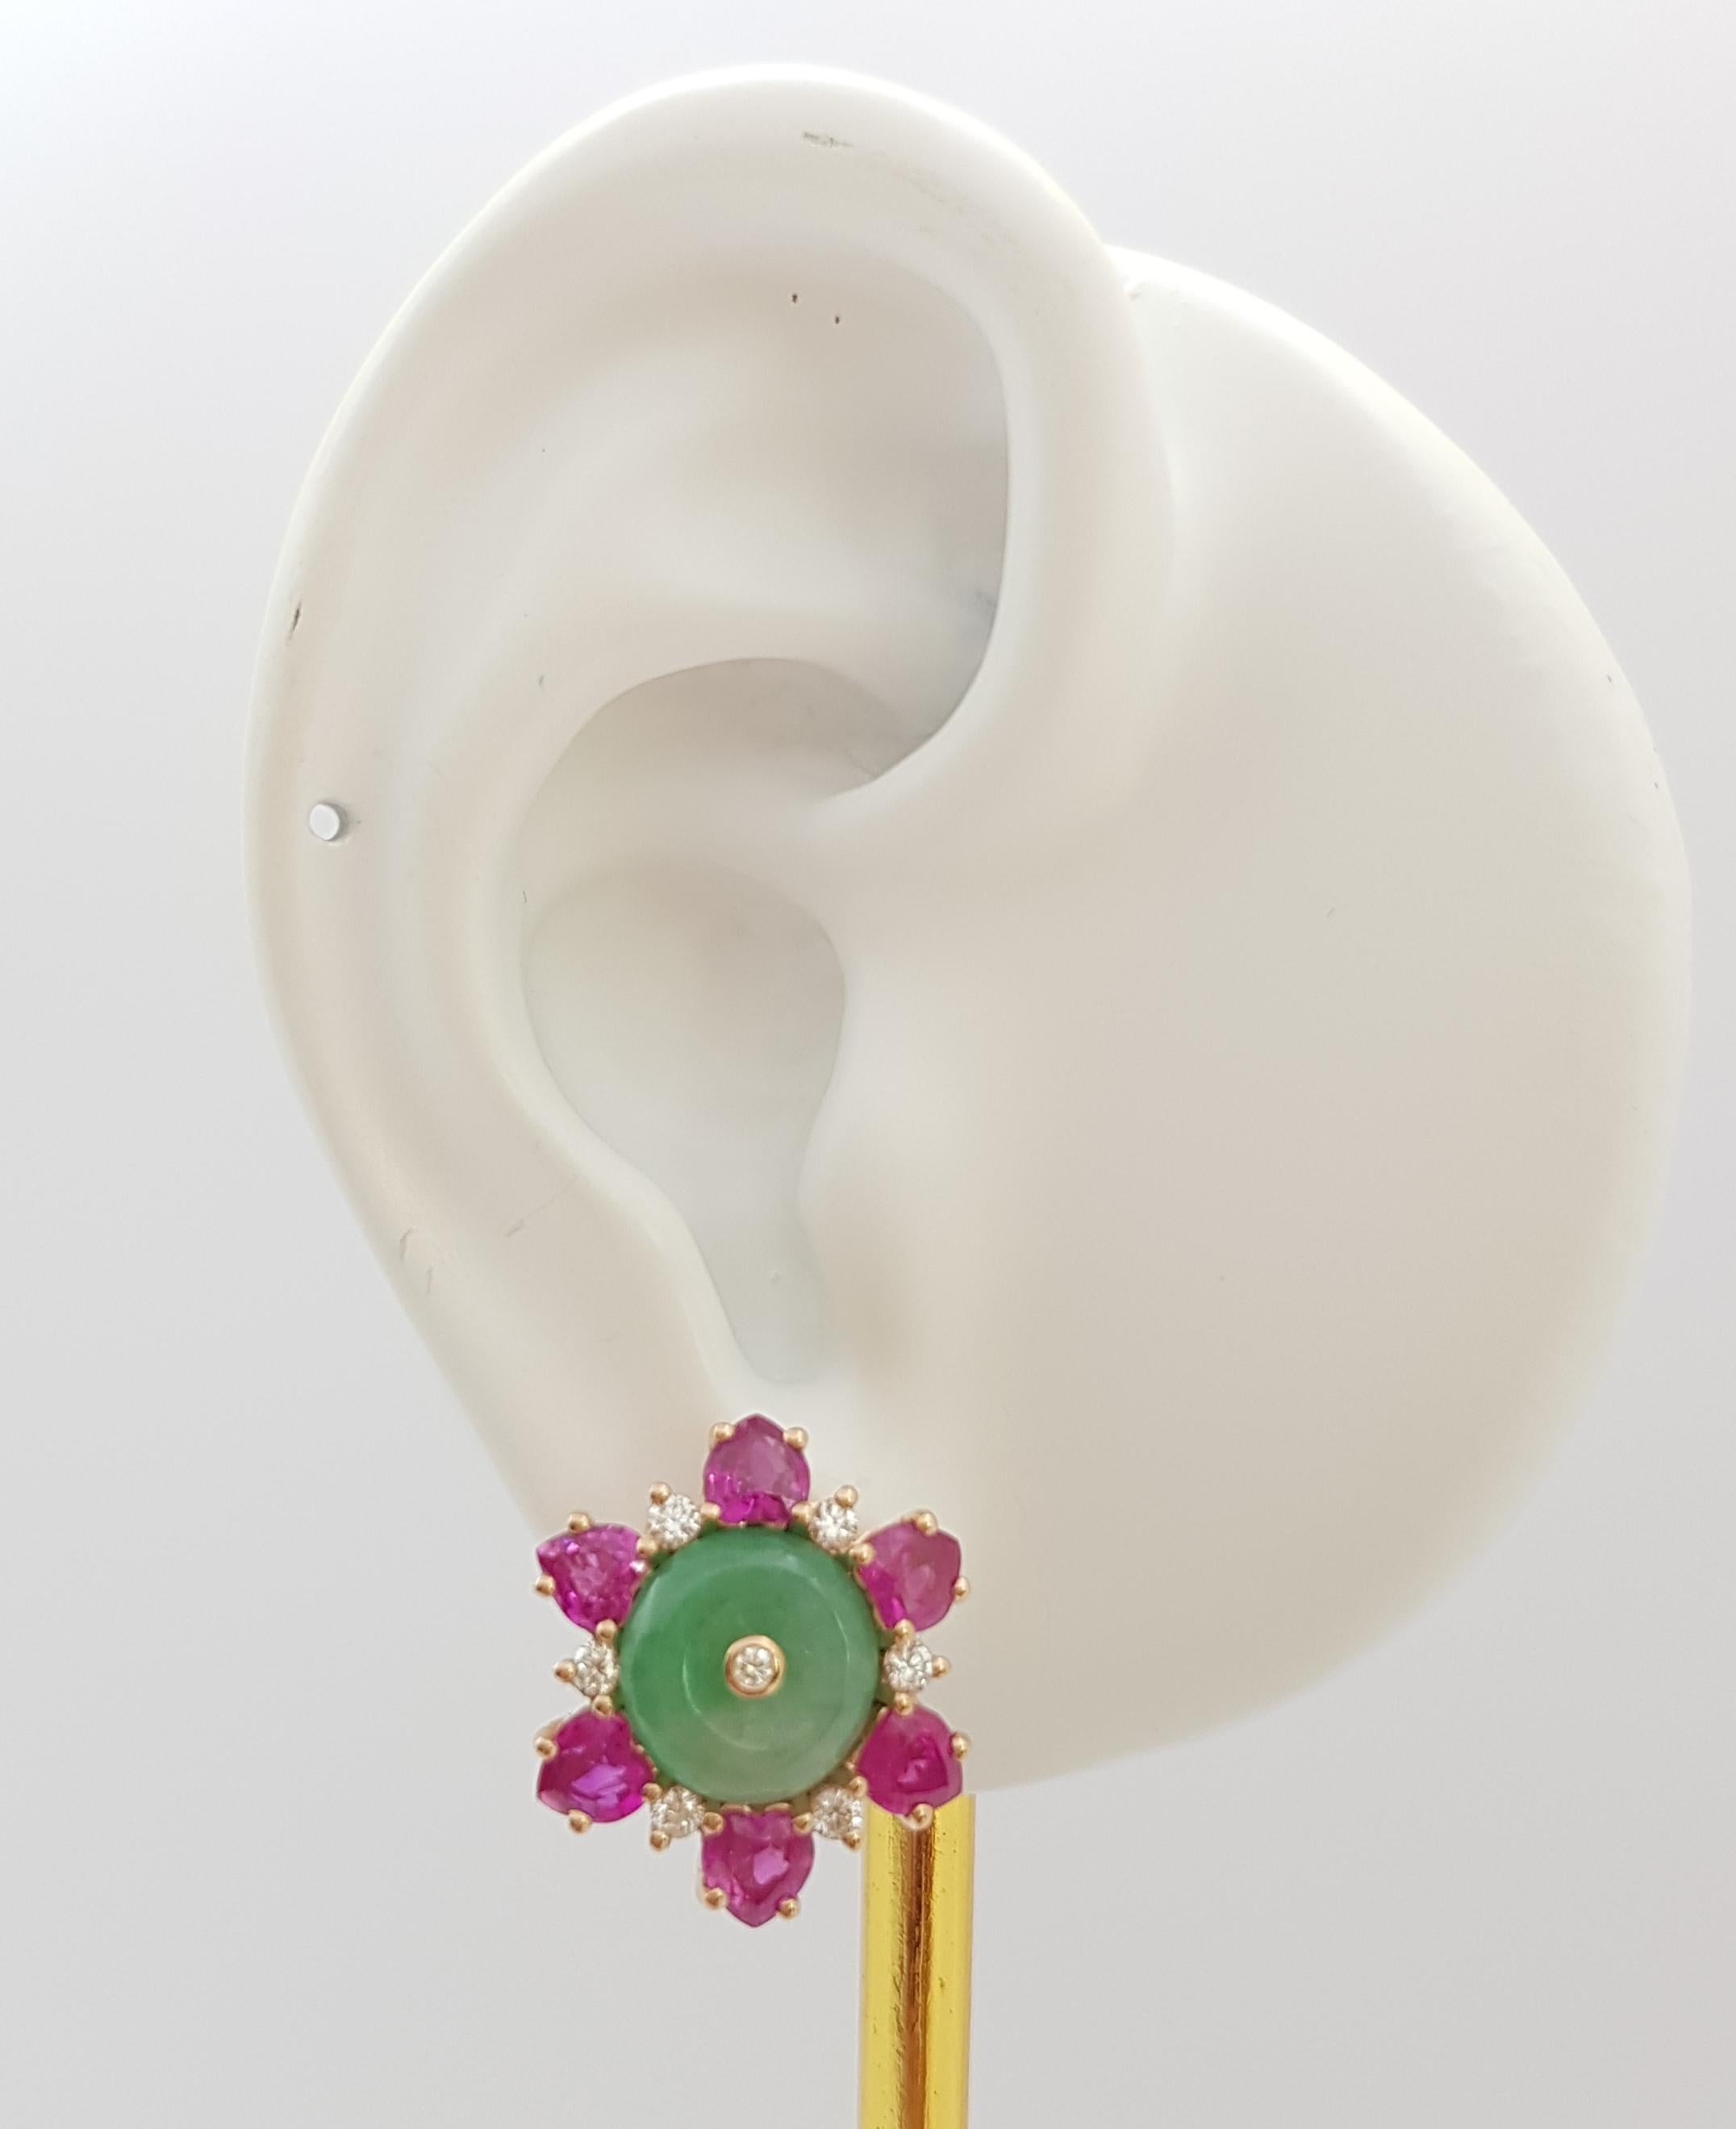 Ohrringe aus Jade, Rubin (3,30 Karat) und Diamant (0,30 Karat) in einer Fassung aus 18 Karat Roségold

Breite: 1.7 cm 
Länge: 1.7 cm
Gesamtgewicht: 9,55 Gramm

